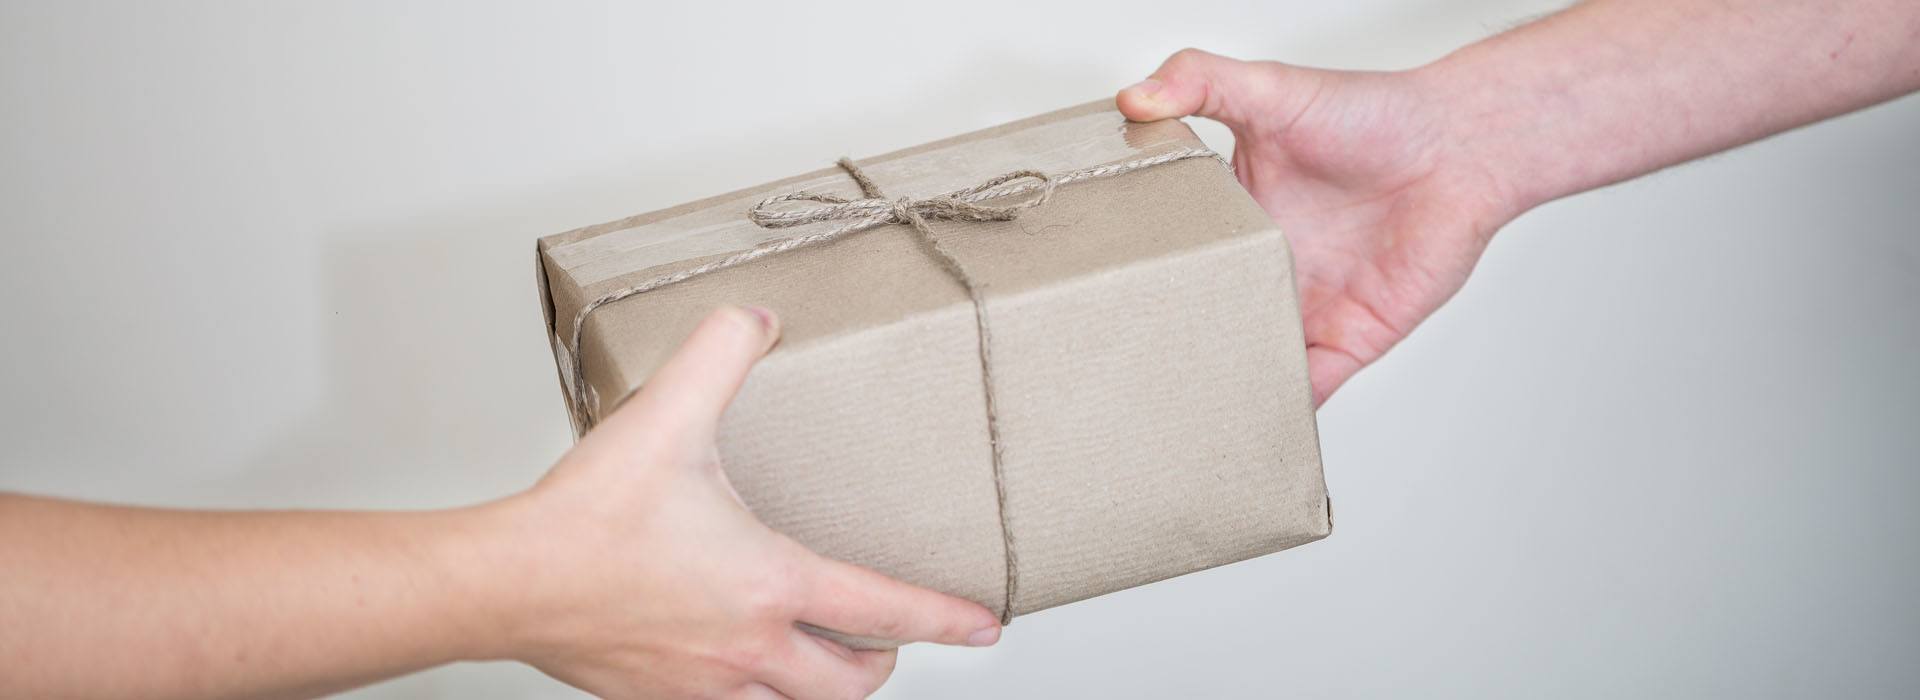 A képen egy csomagot átadó és egy csomagot átvevő kéz látható.